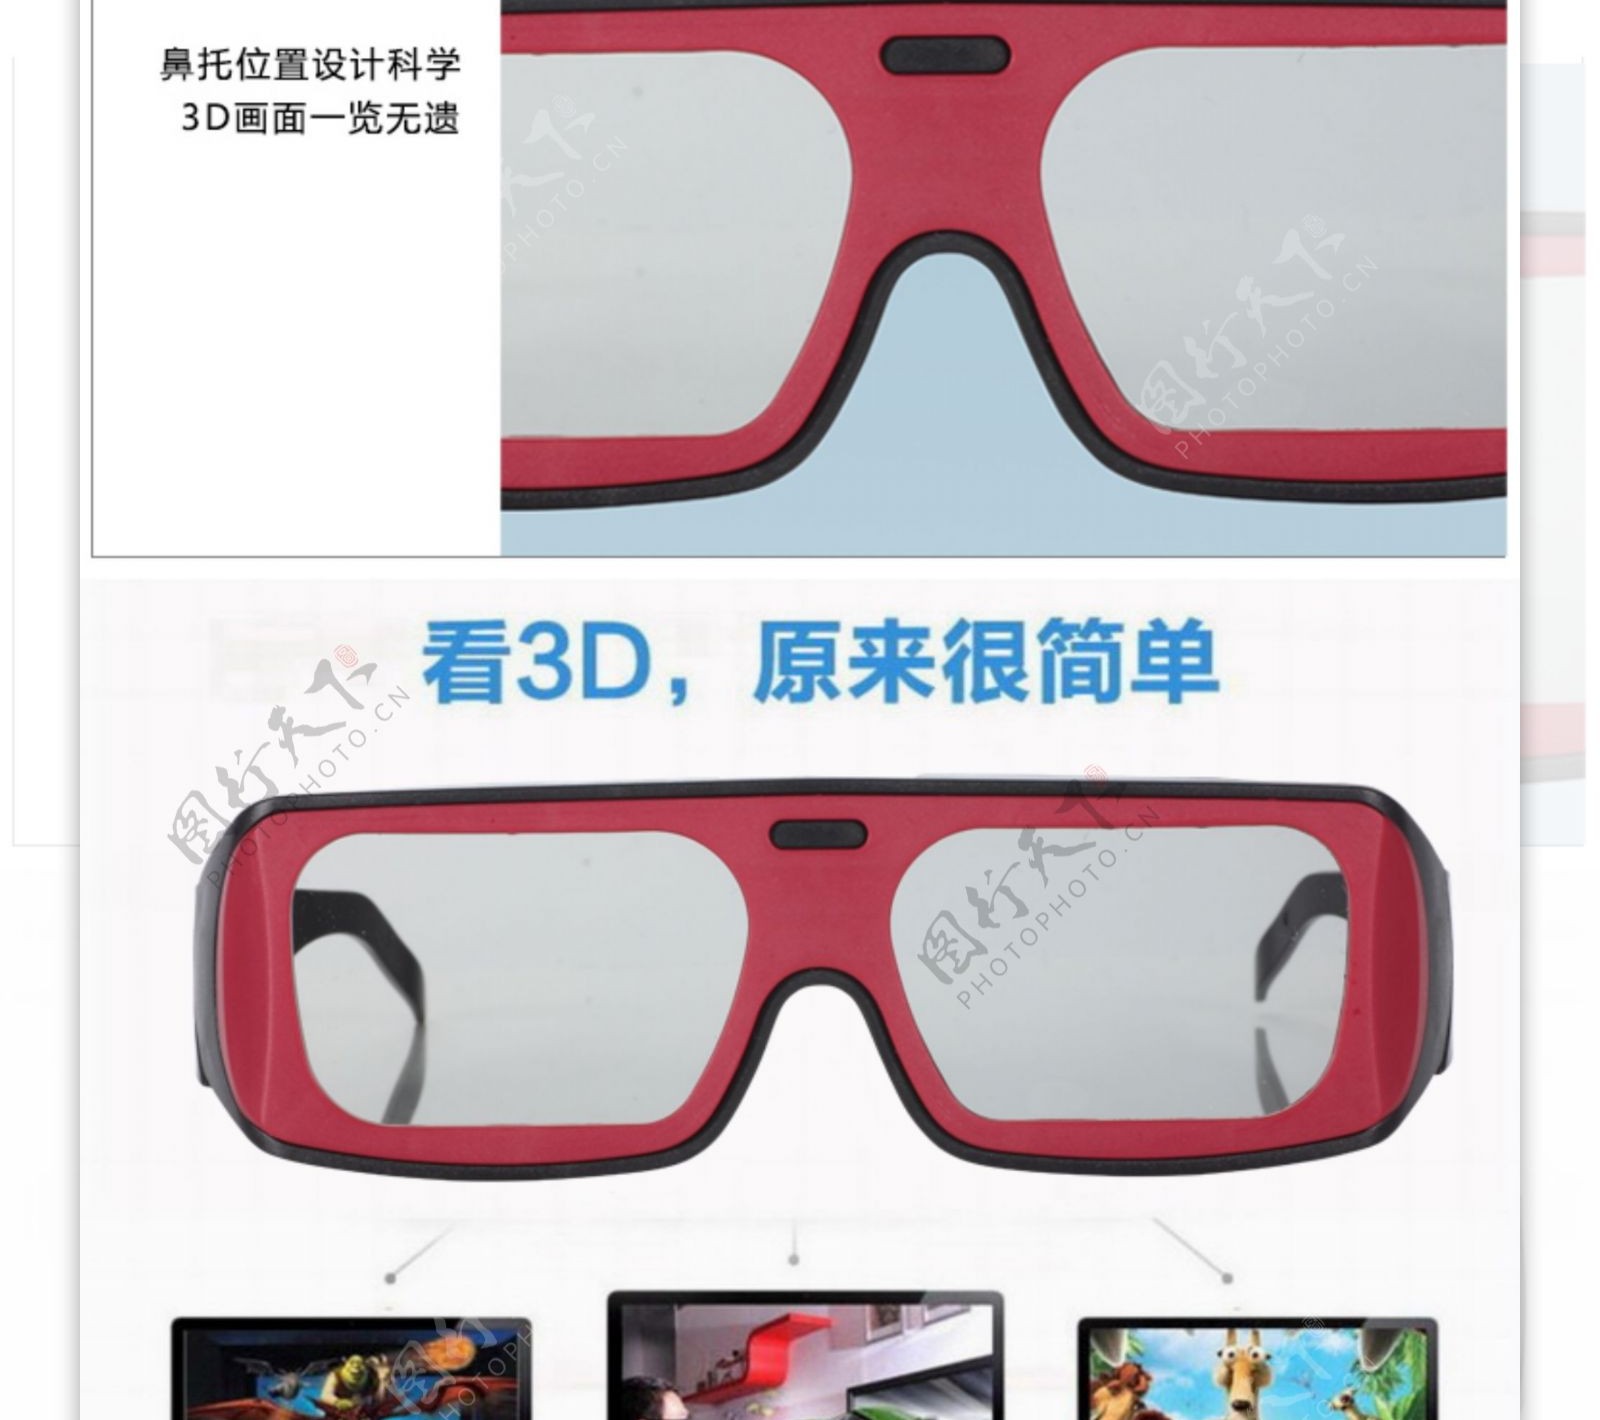 简洁大方3D眼镜详情图图片